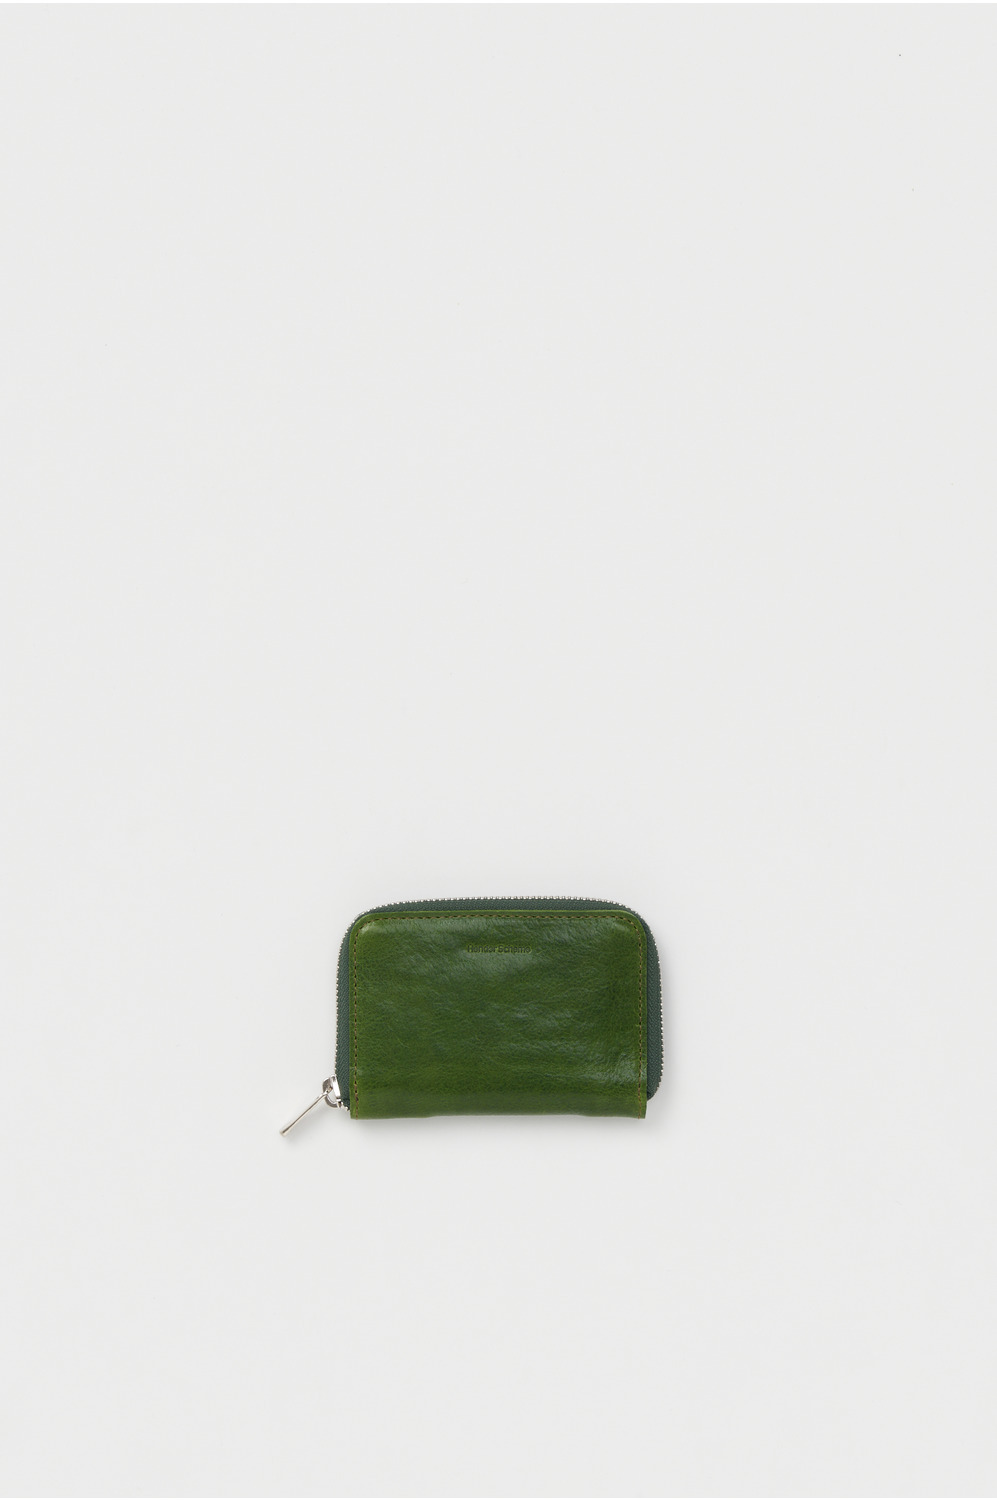 zip key purse 詳細画像 lime green 1